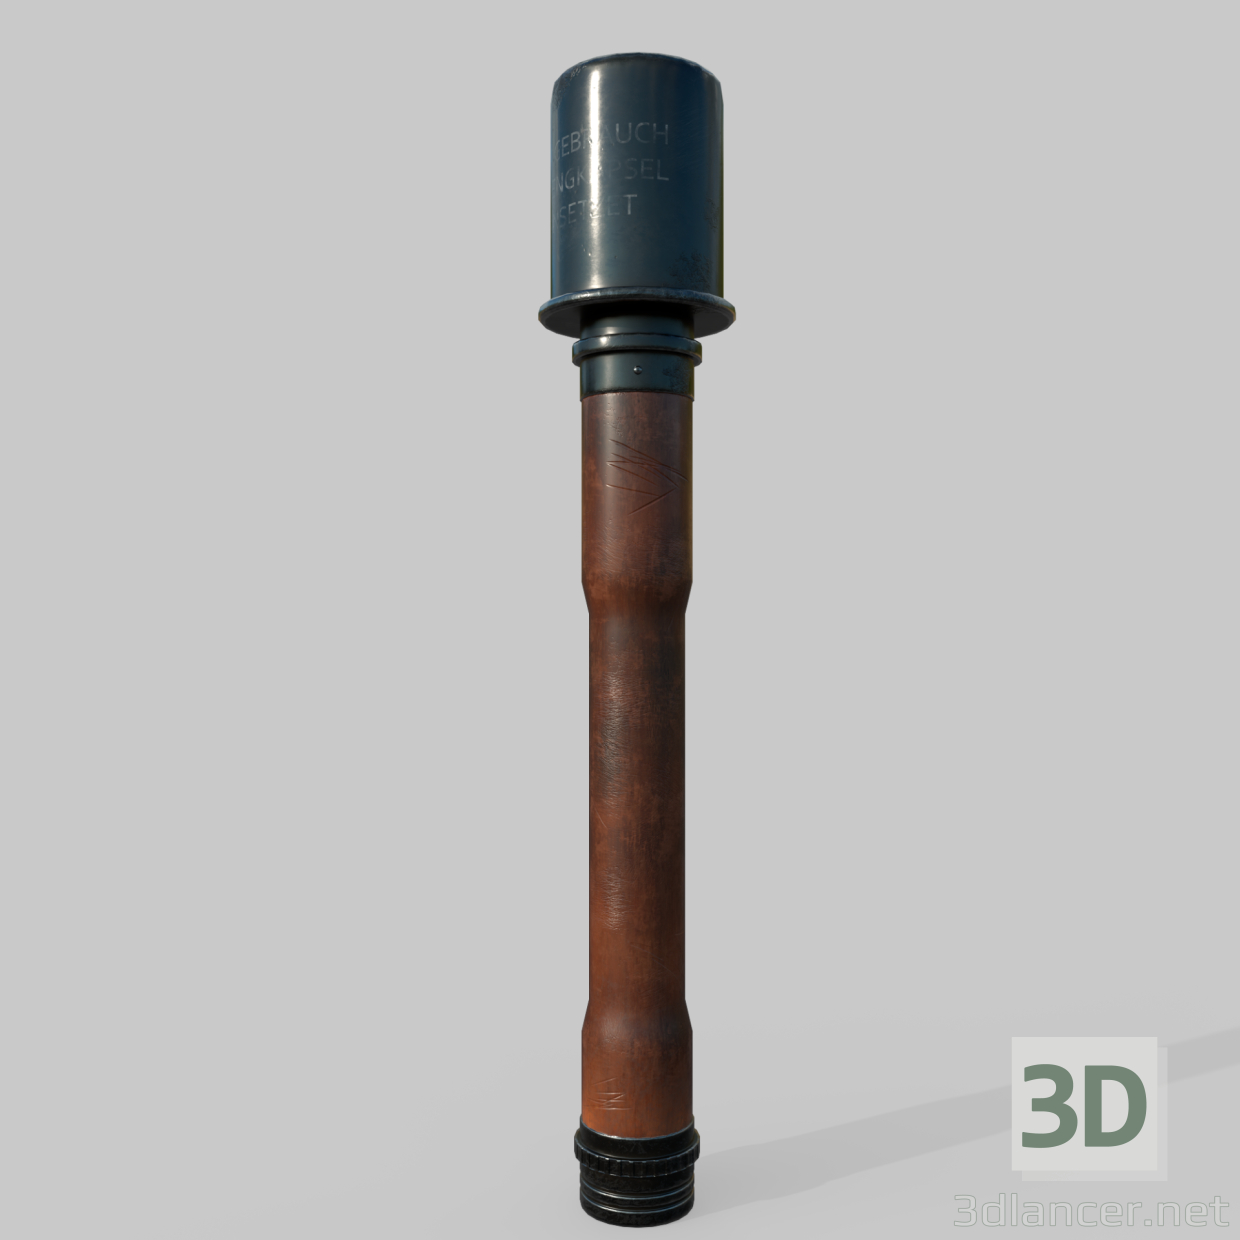 3D El bombası M24 Stielhandgranate modeli satın - render